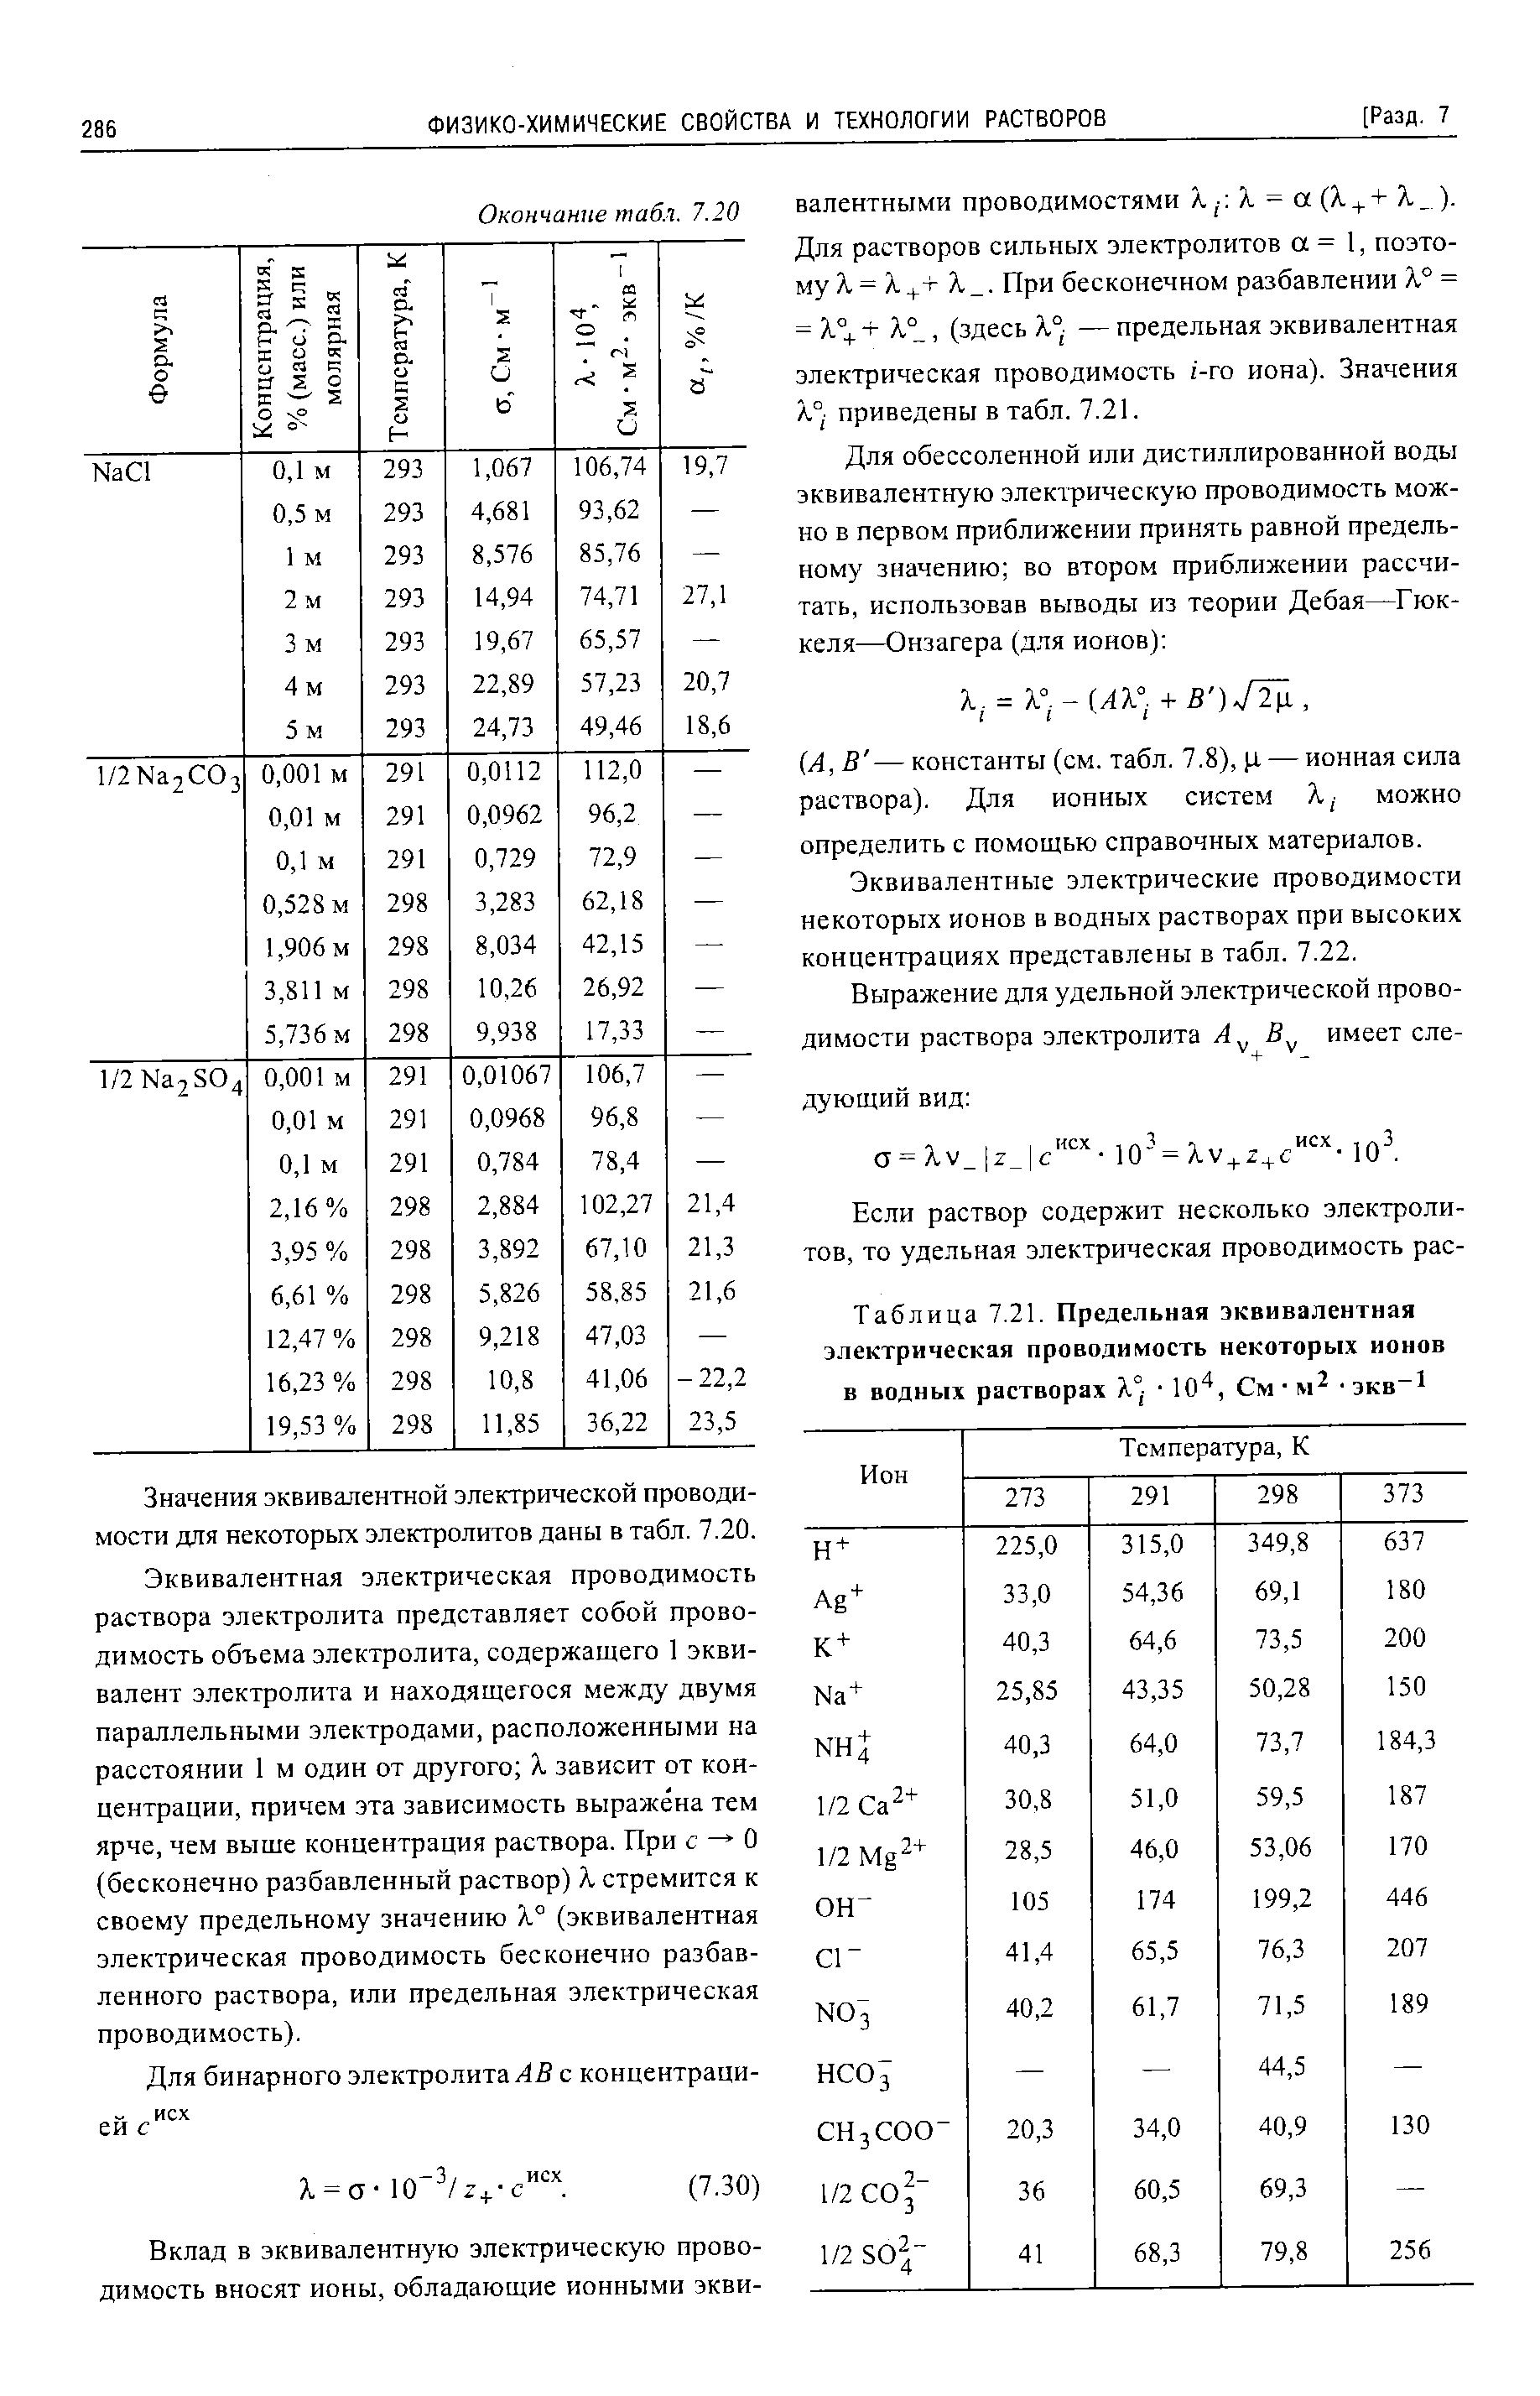 Таблица 7.21. Предельная эквивалентная электрическая проводимость некоторых ионов в водных растворах X°j 10 , См экв 1
